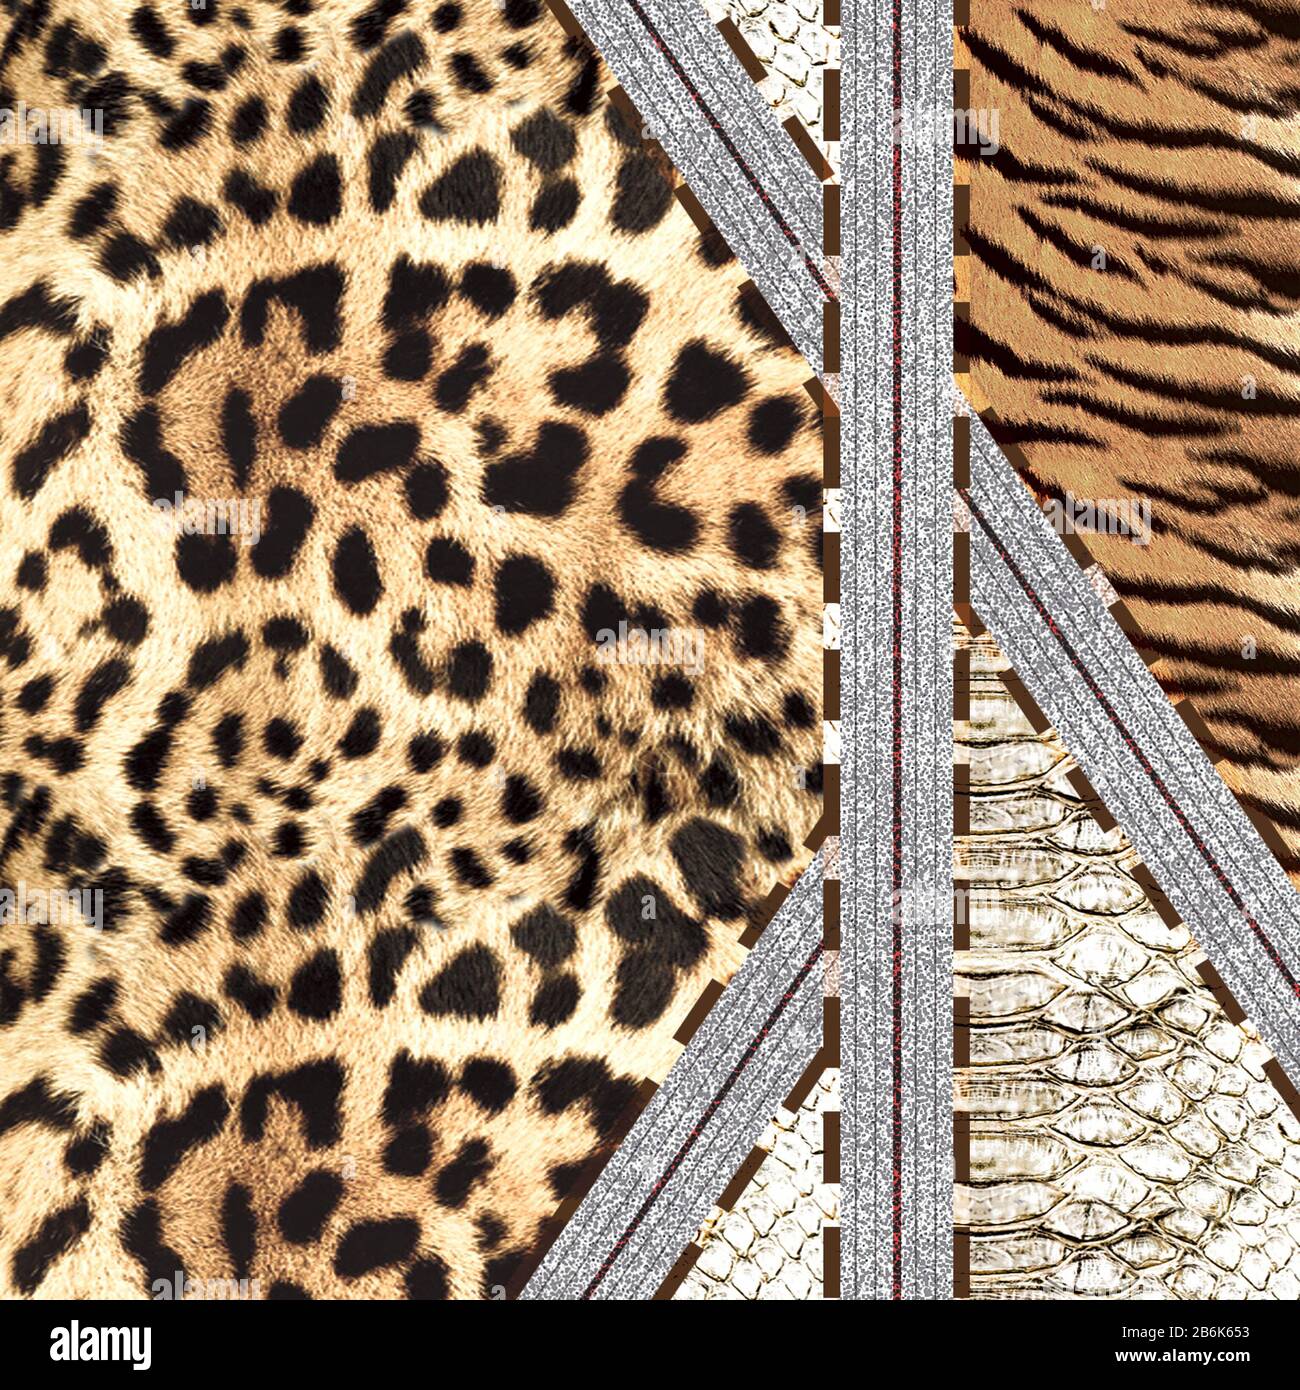 Tierischer Hauthintergrund mit handgezogenen braunen Streifen und grauen Rändern. Tiger, Leopard, Gepard, Schlangentextur. - Abbildung Stockfoto